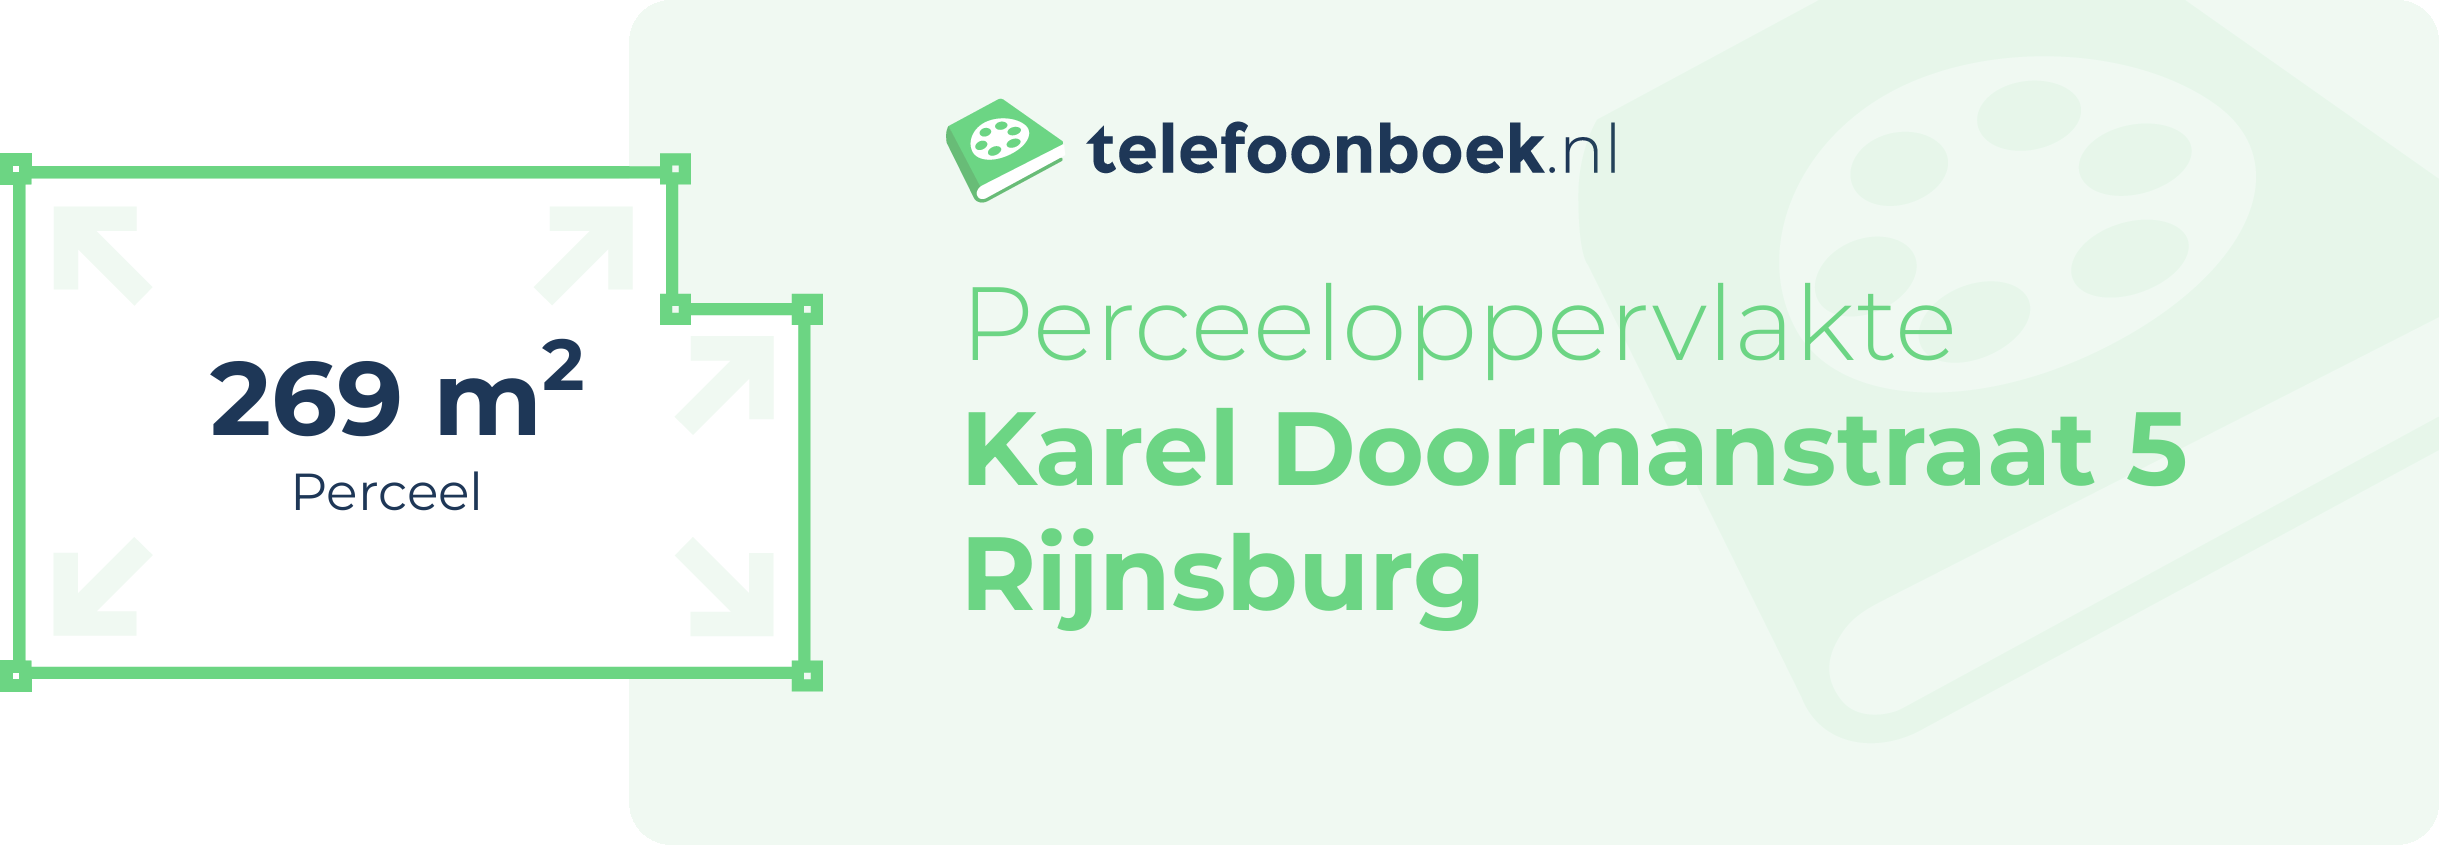 Perceeloppervlakte Karel Doormanstraat 5 Rijnsburg